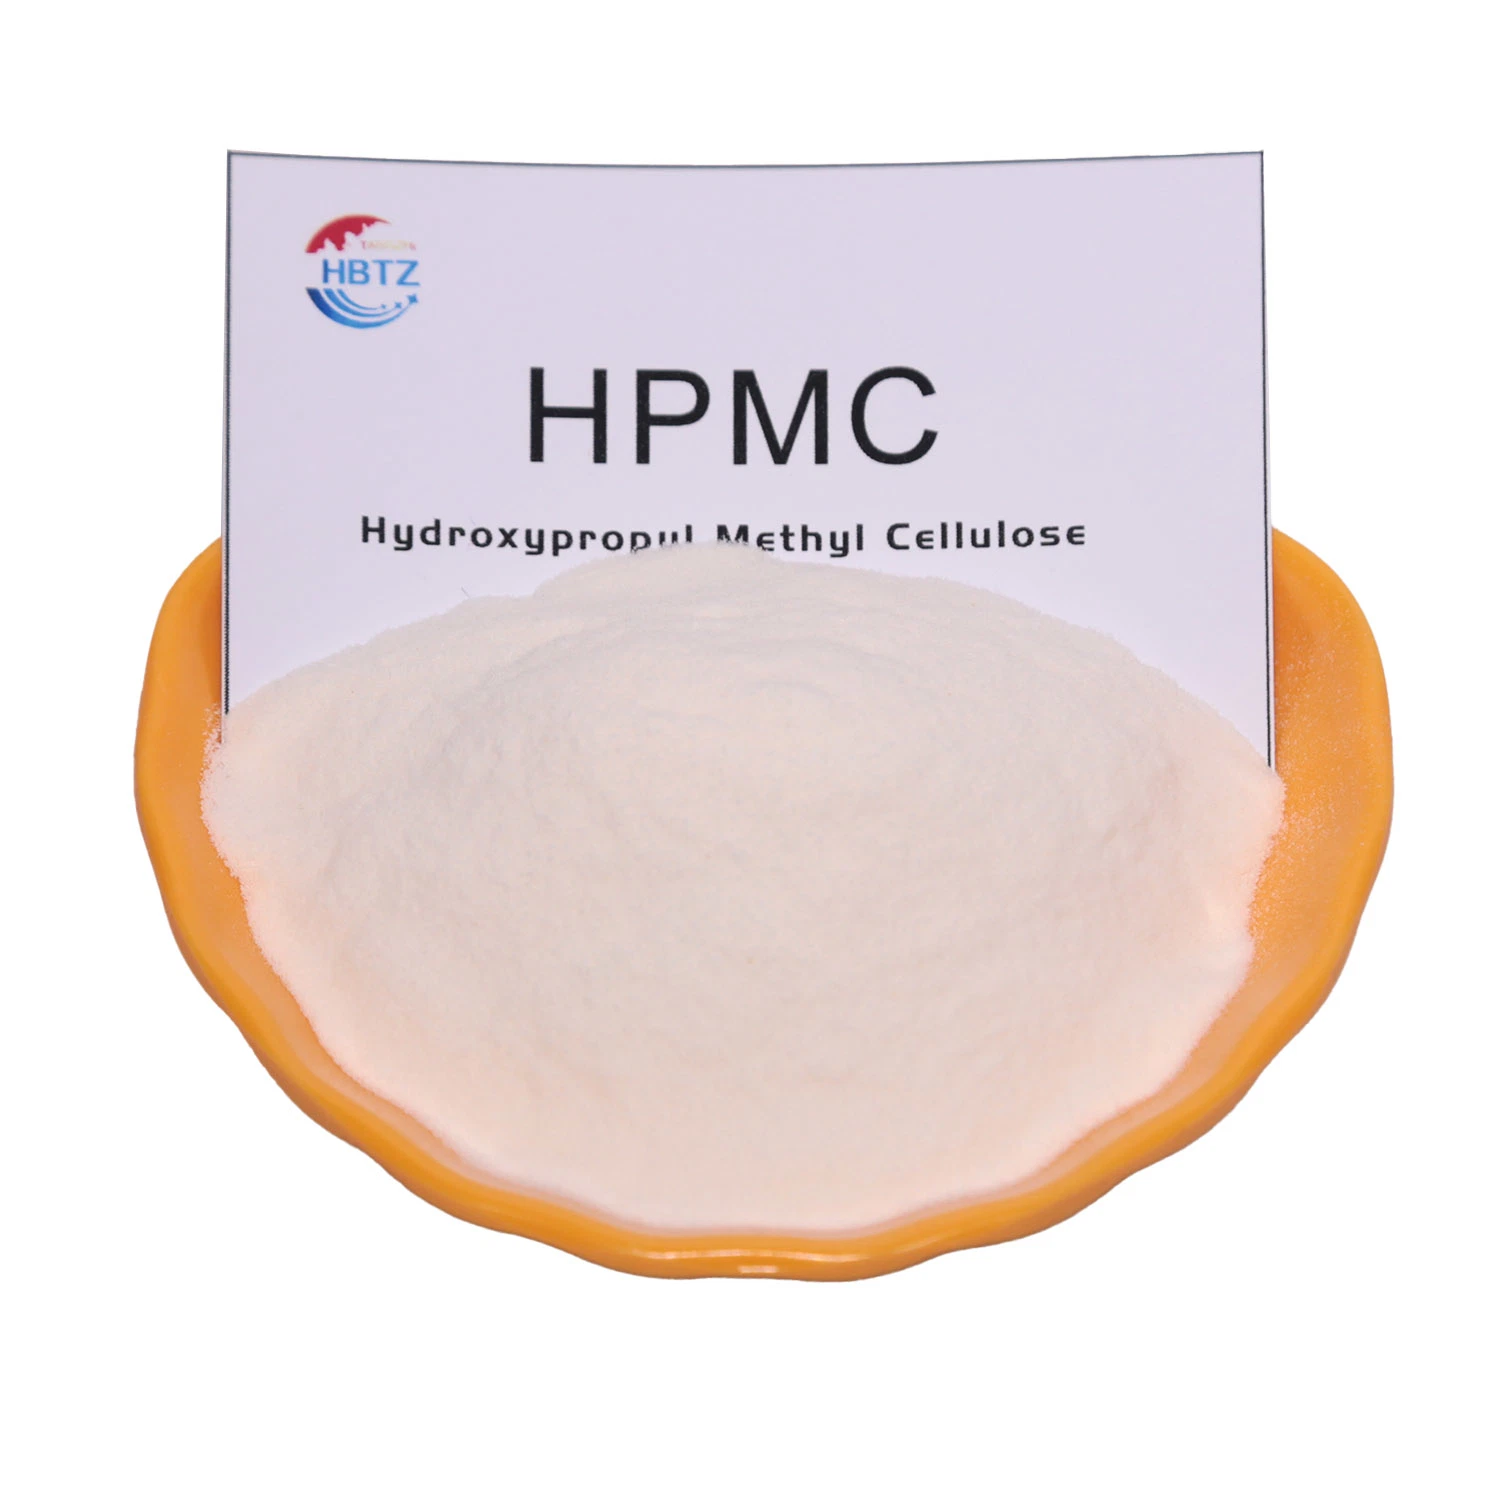 Adhésif pour carreaux Hydroxypropyl Methyl cellulose HPMC pour qualité chimique industrielle